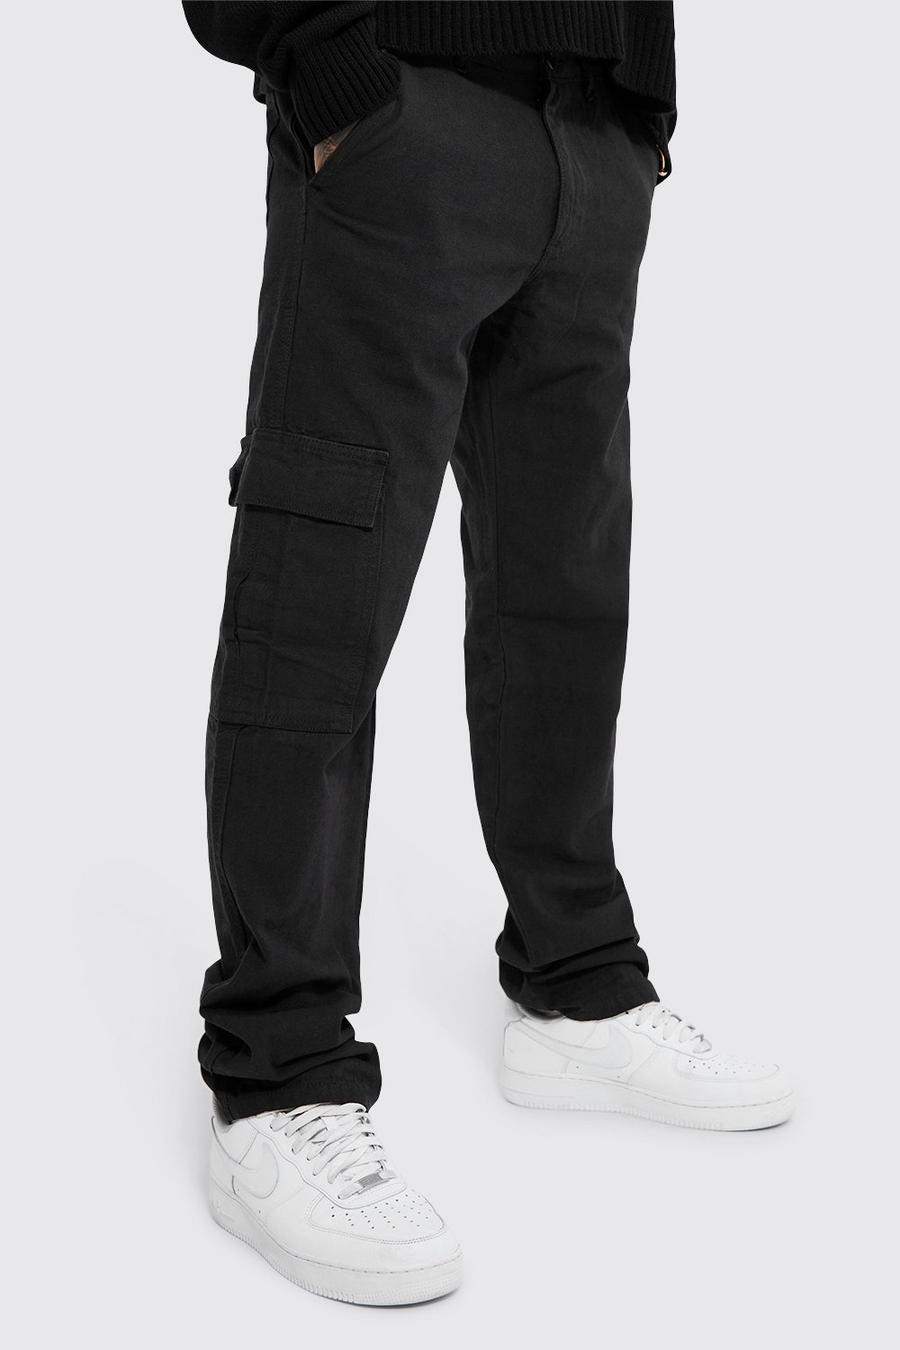 שחור negro מכנסי דגמ'ח בגזרה ישרה עם אפקט נערם ורצועת מותניים מקובעת